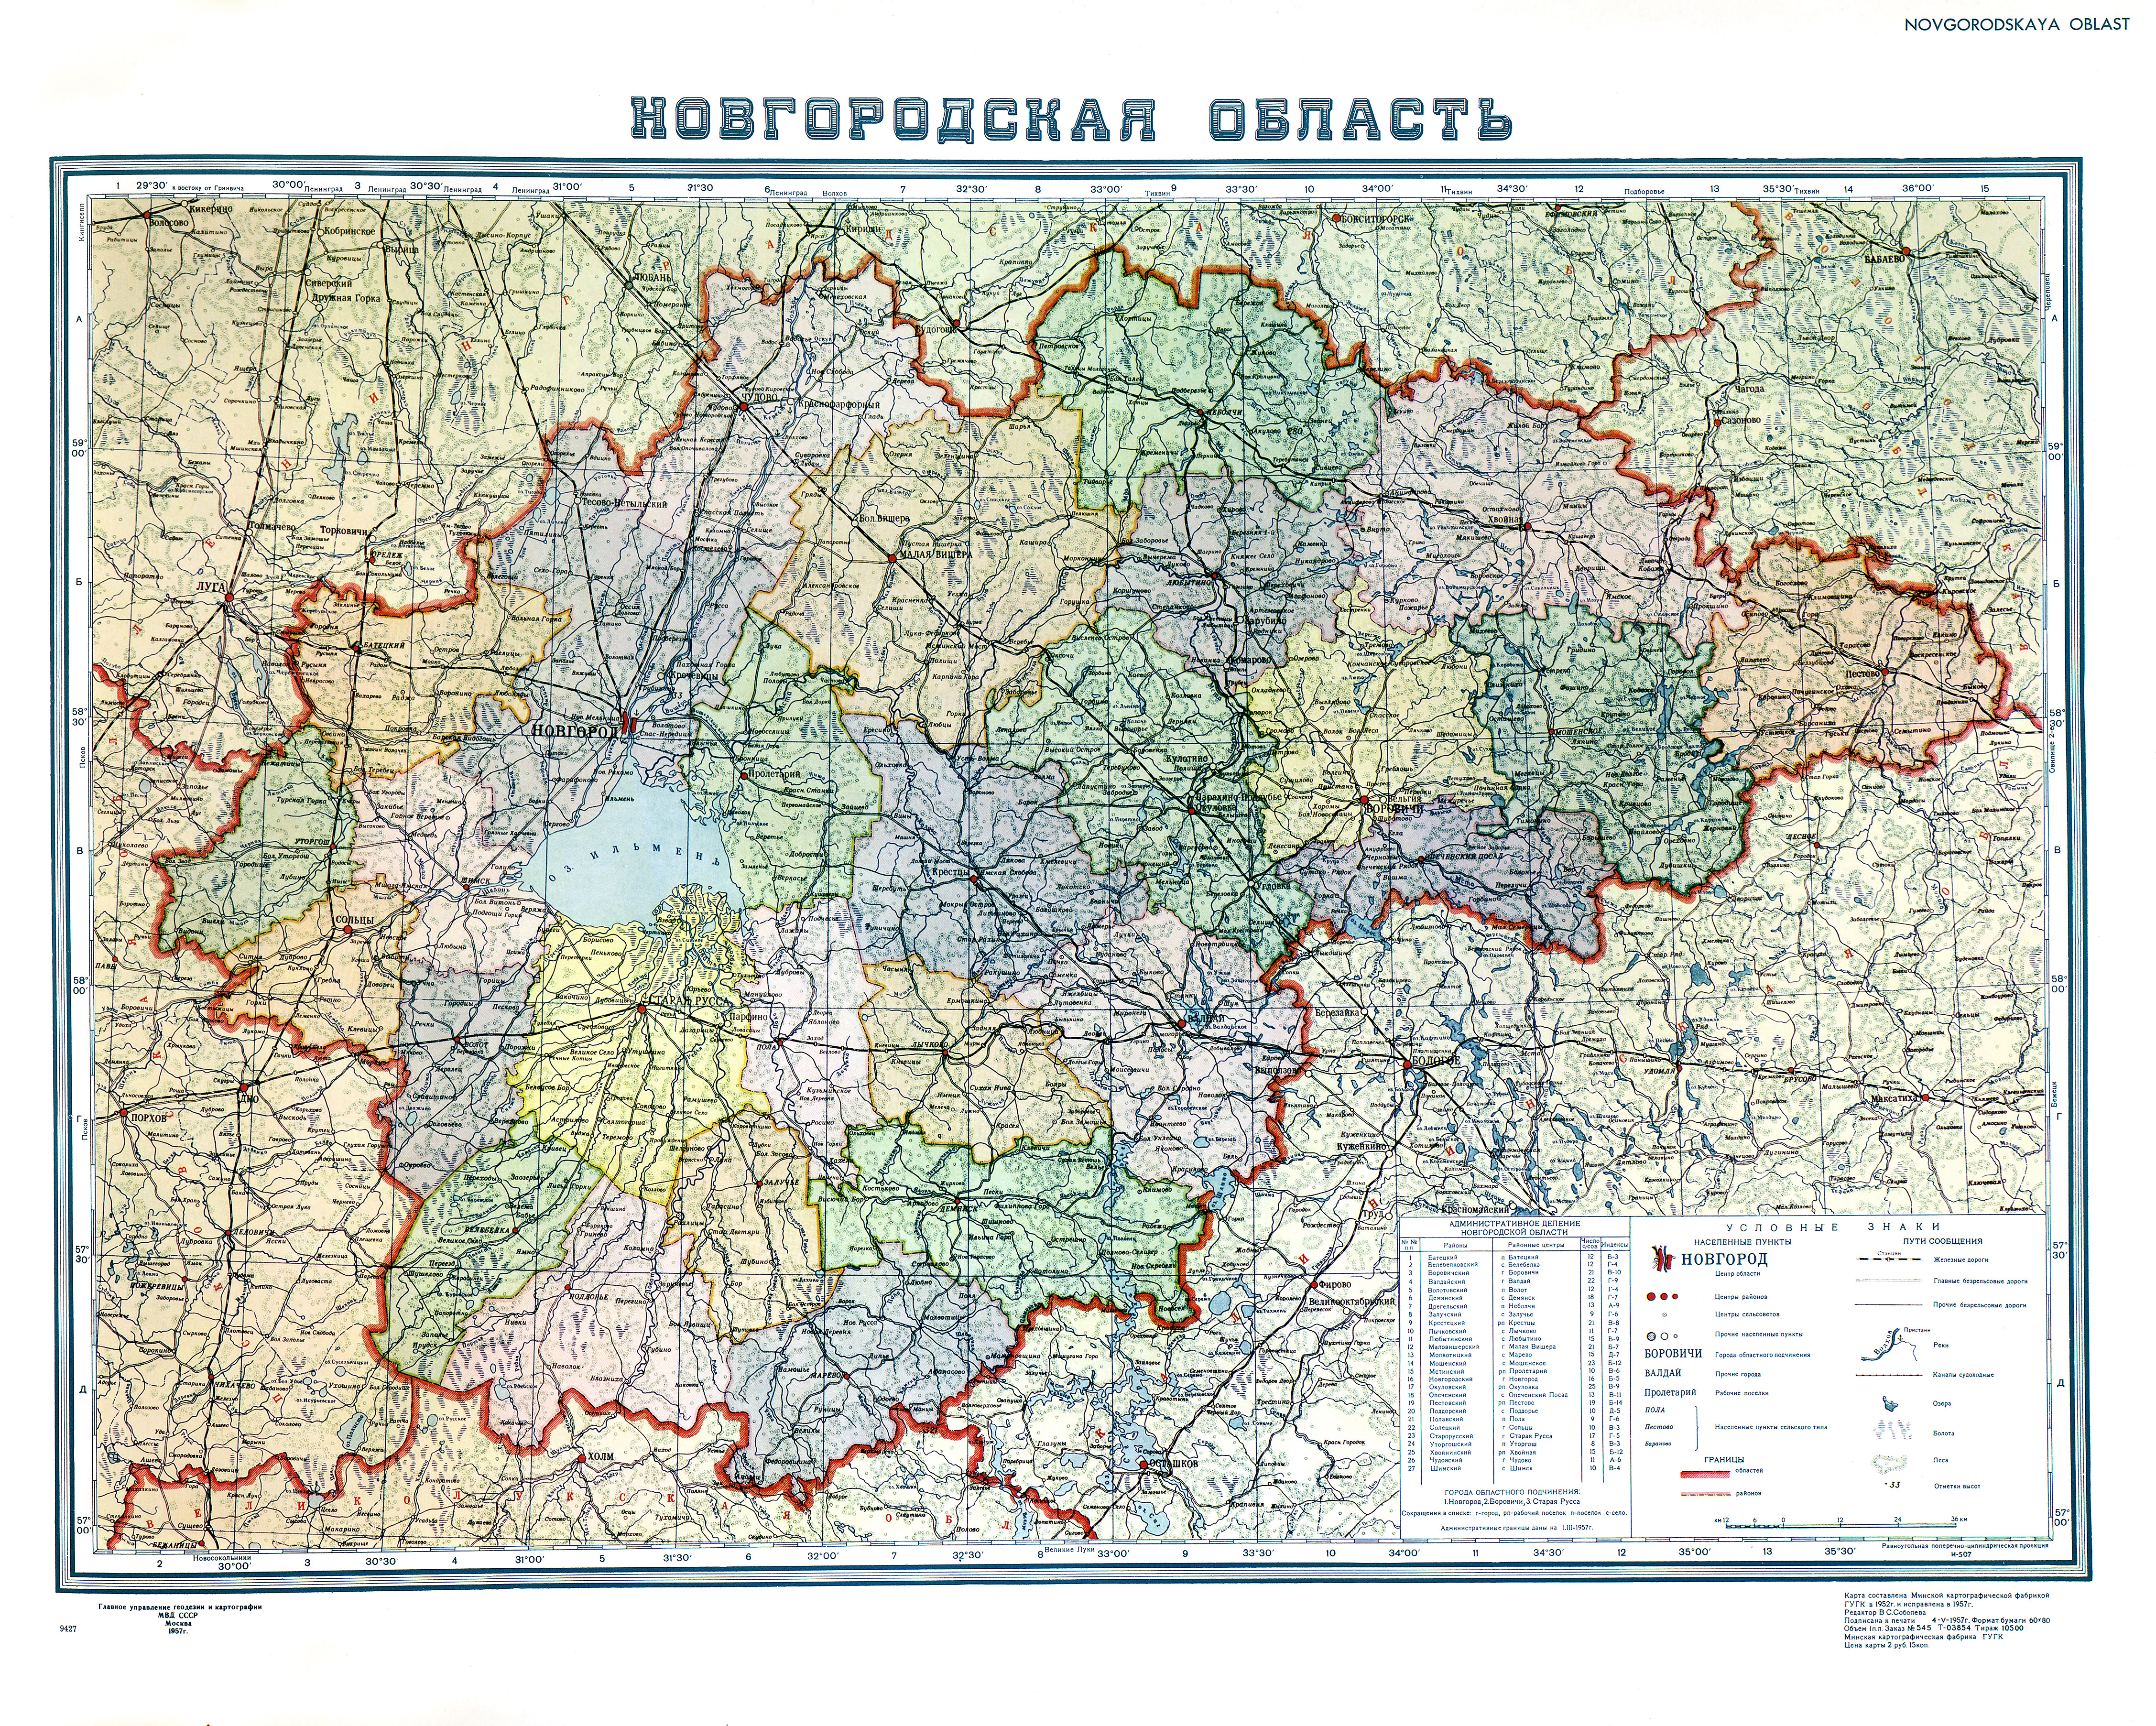 http://map.etomesto.ru/base/53/1957novgorod.jpg